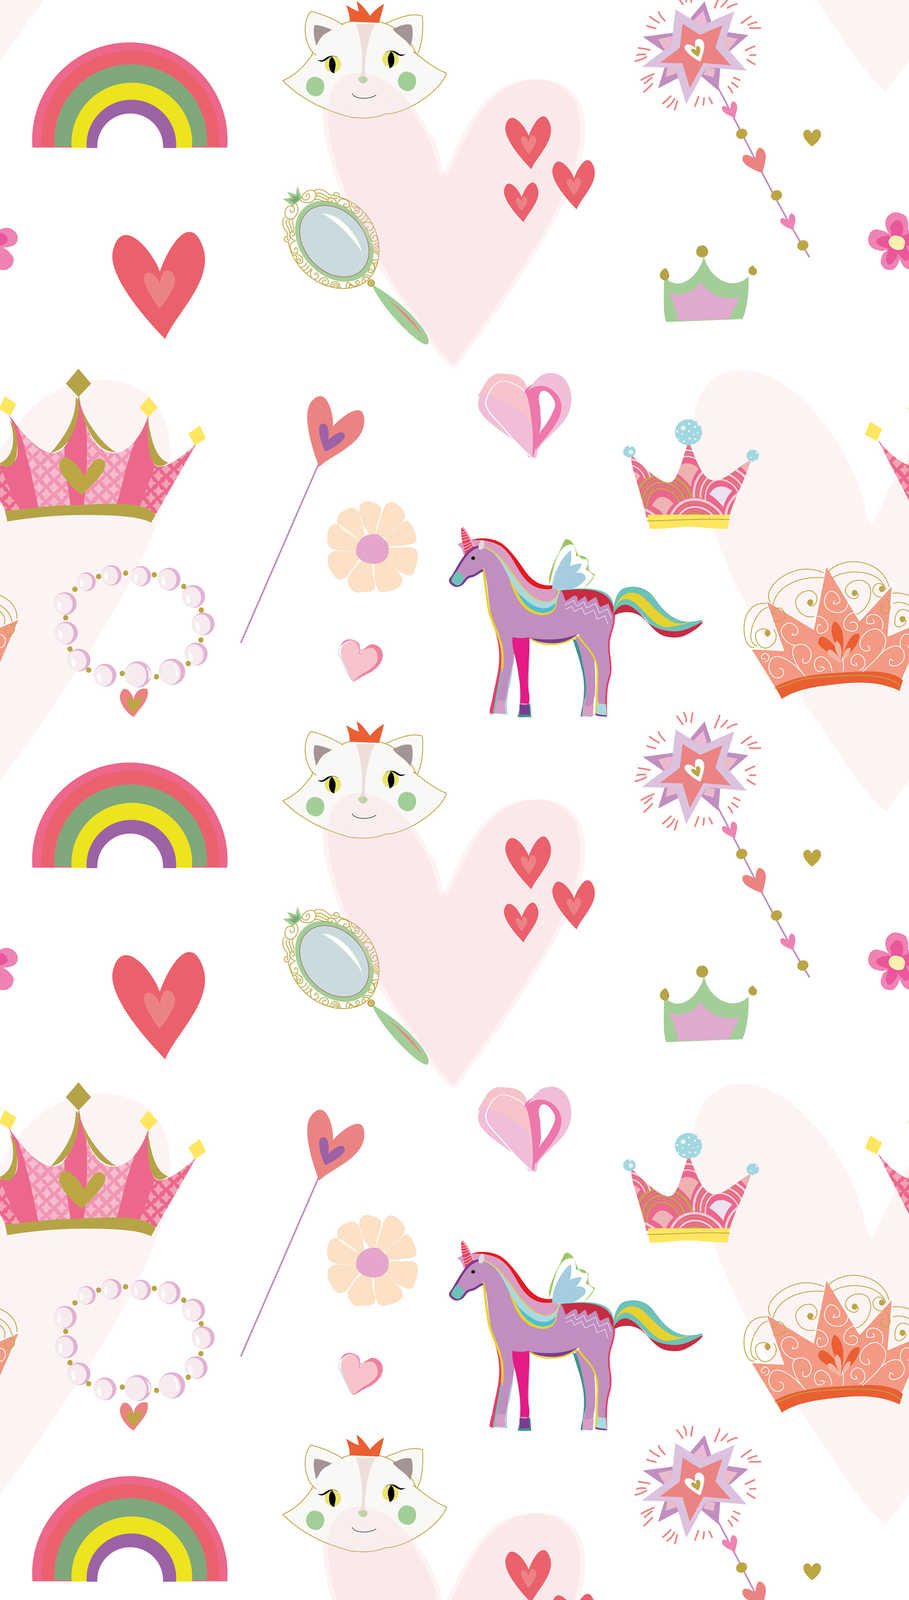             Papier peint enfant style princesse avec cœurs et animaux - multicolore, rose, blanc
        